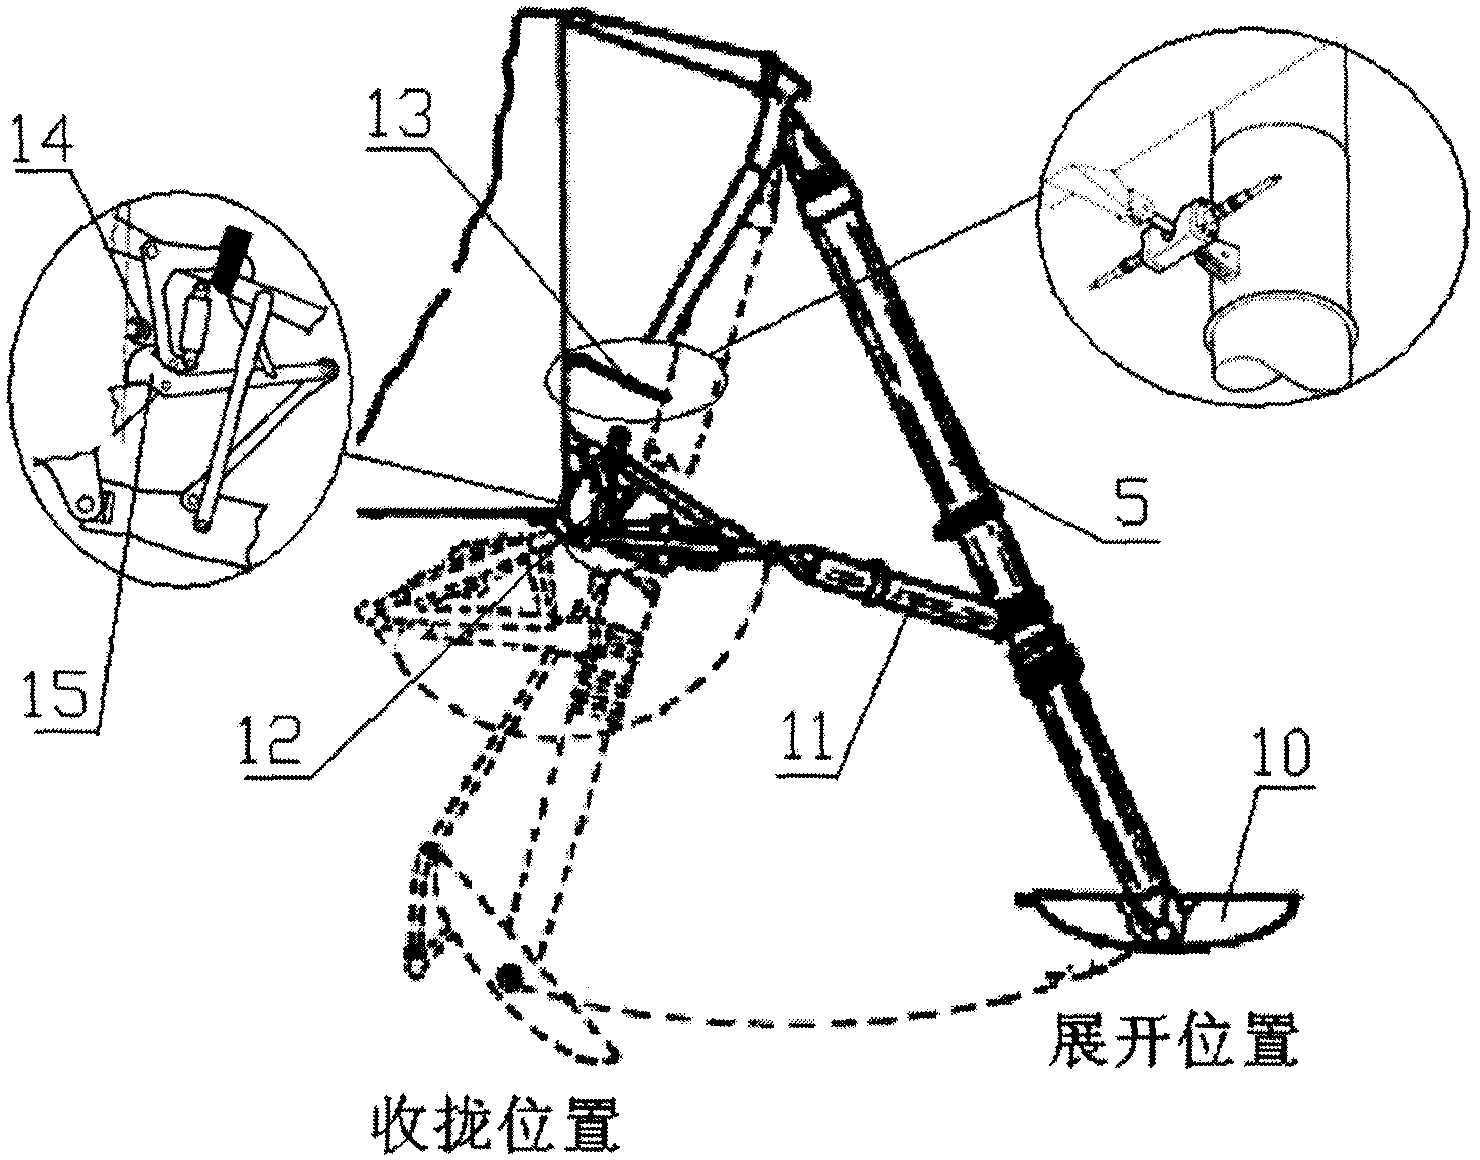 A detector landing buffer mechanism